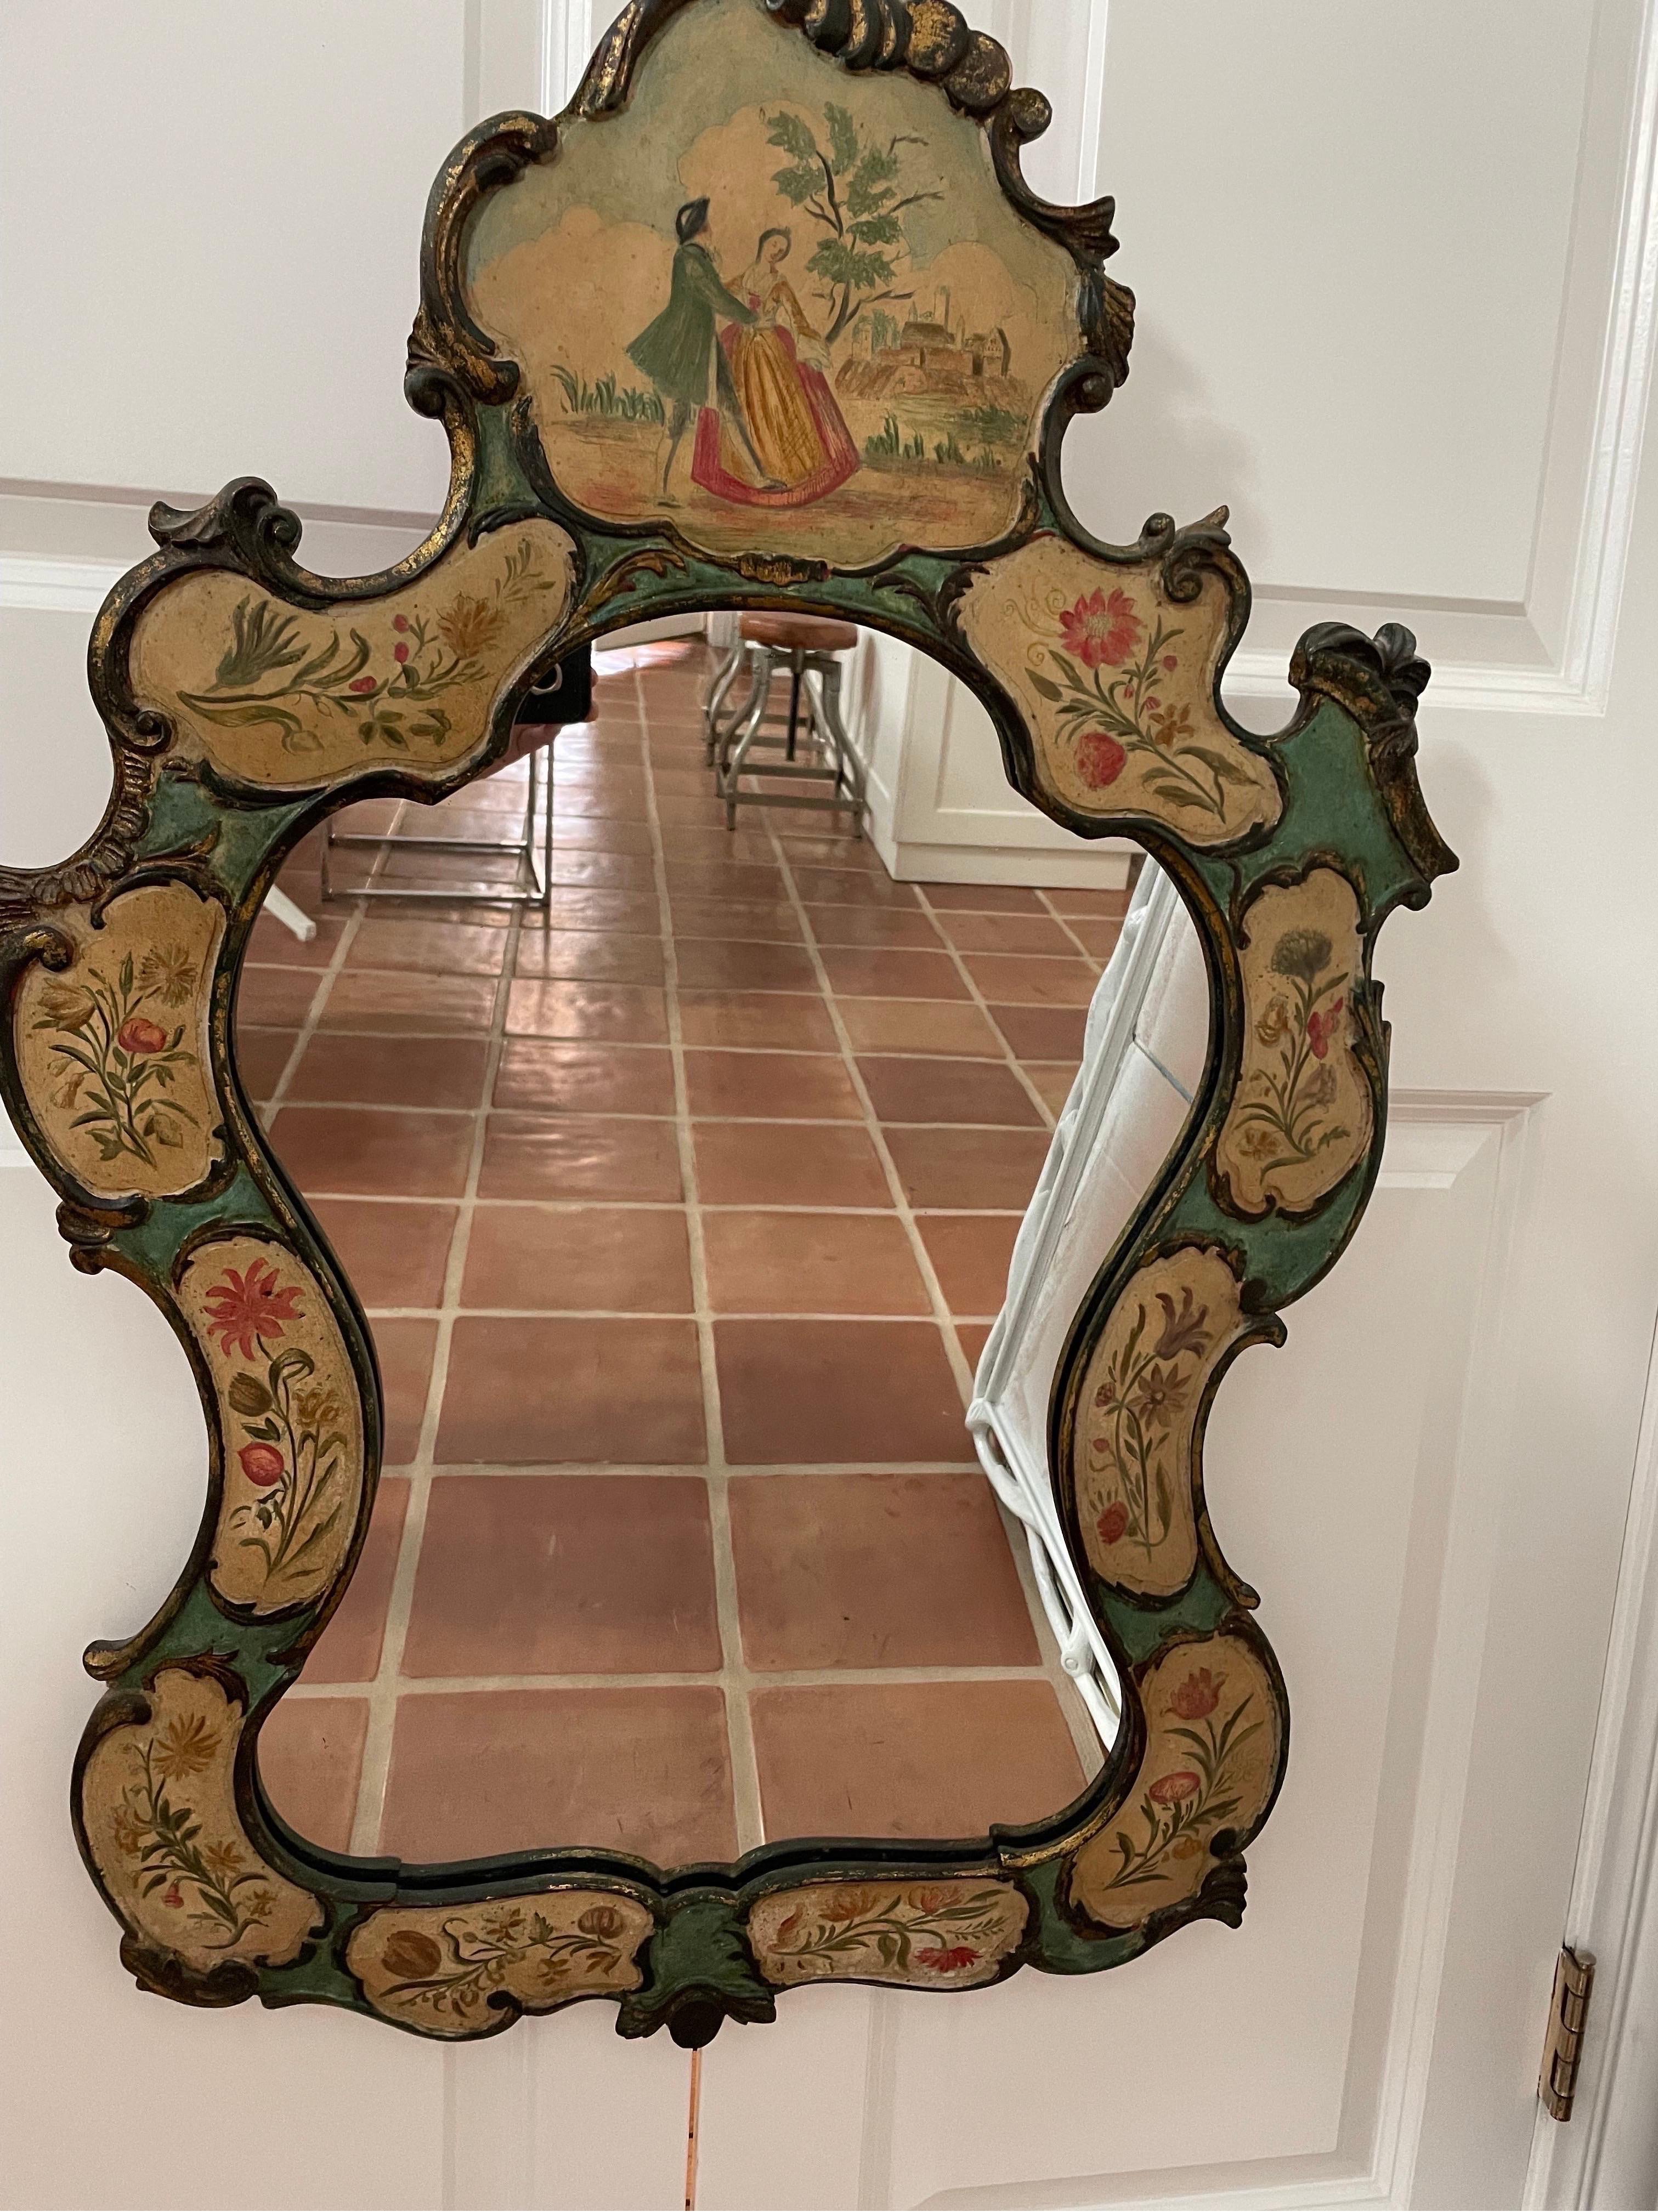 Voici un magnifique miroir en bois italien peint à la main et estampillé Palladio au dos. 
Il date des années 1960-70 et est en très bon état.